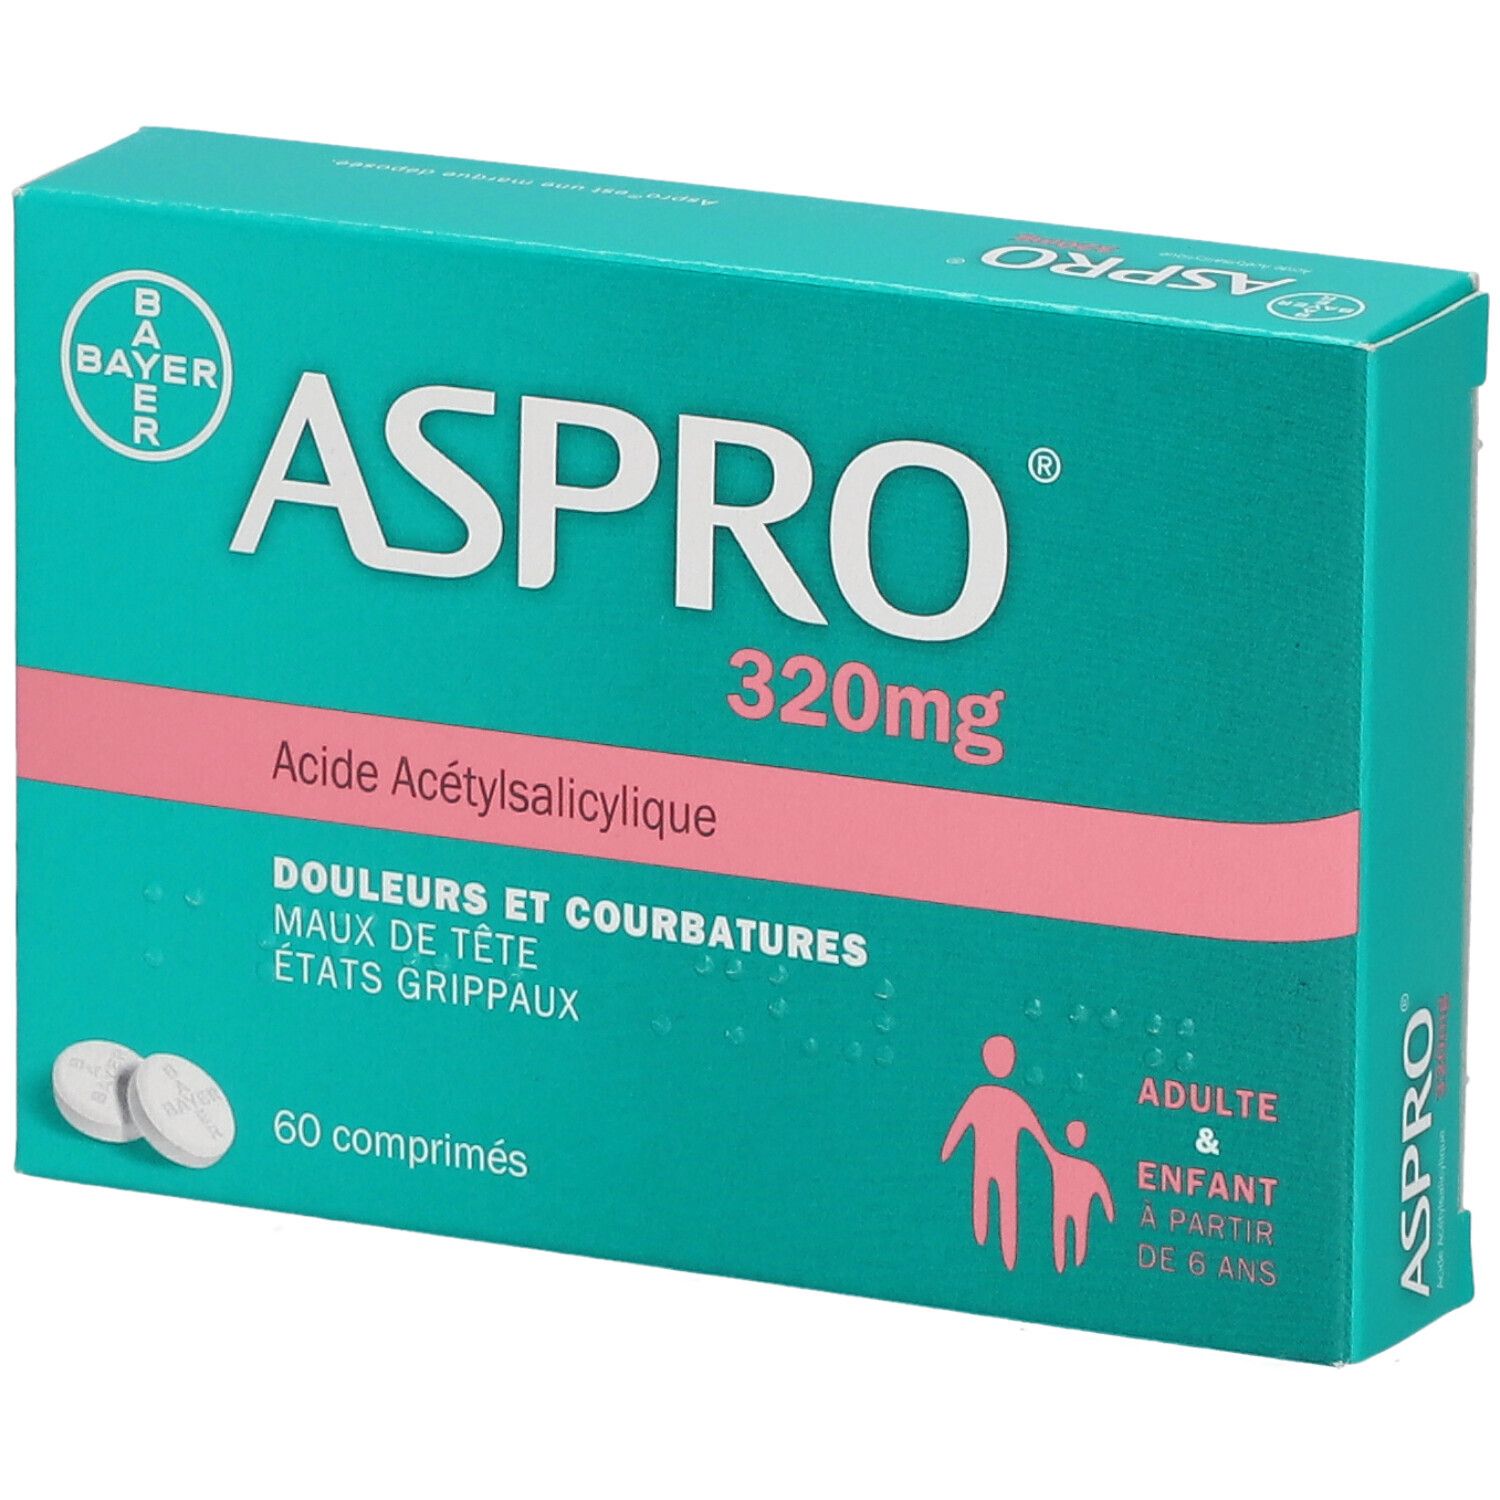 Aspro® 320 mg